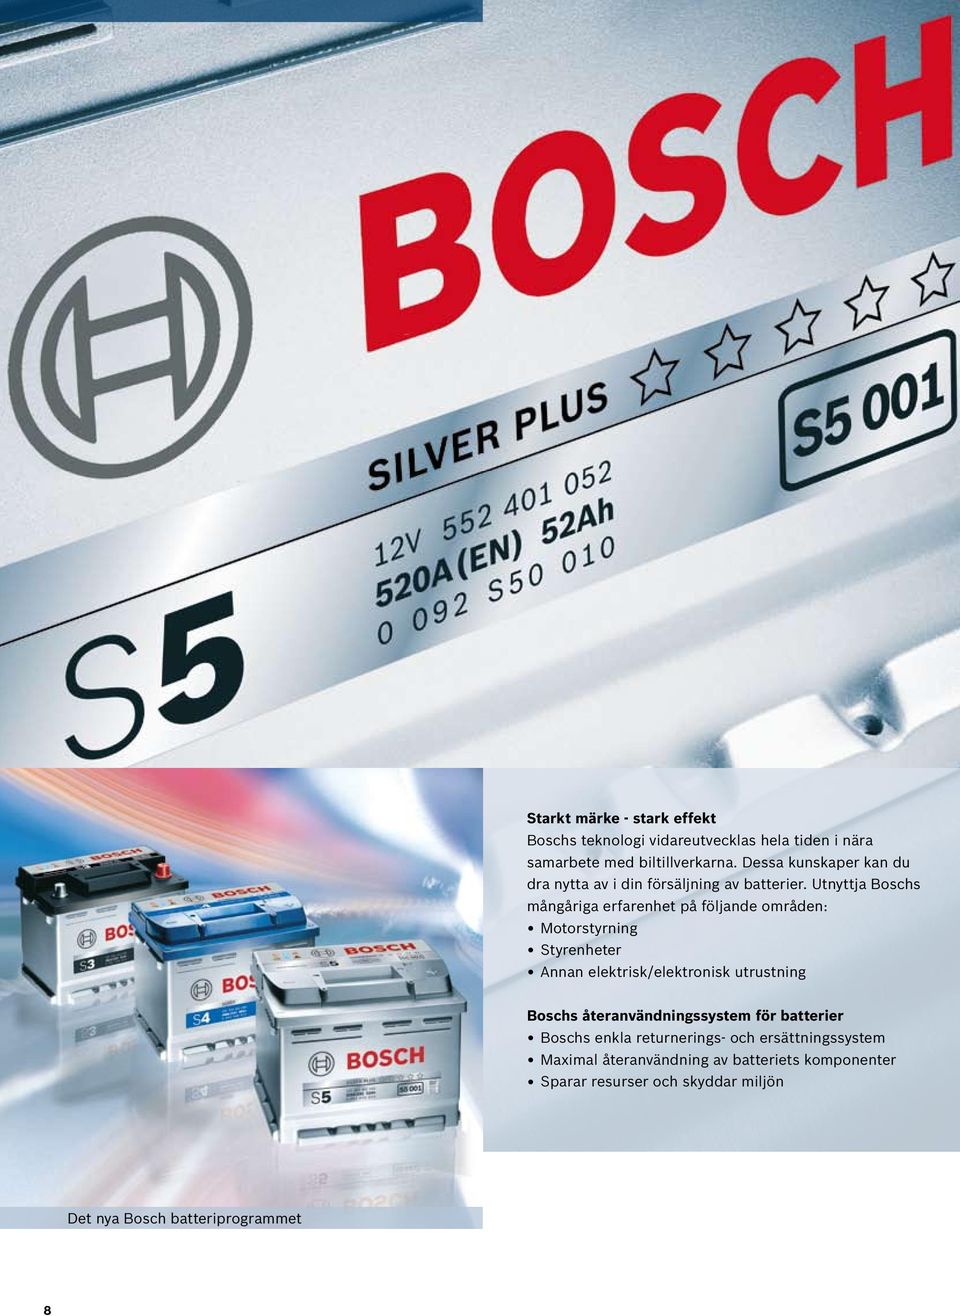 Utnyttja Boschs mångåriga erfarenhet på följande områden: Motorstyrning Styrenheter Annan elektrisk/elektronisk utrustning